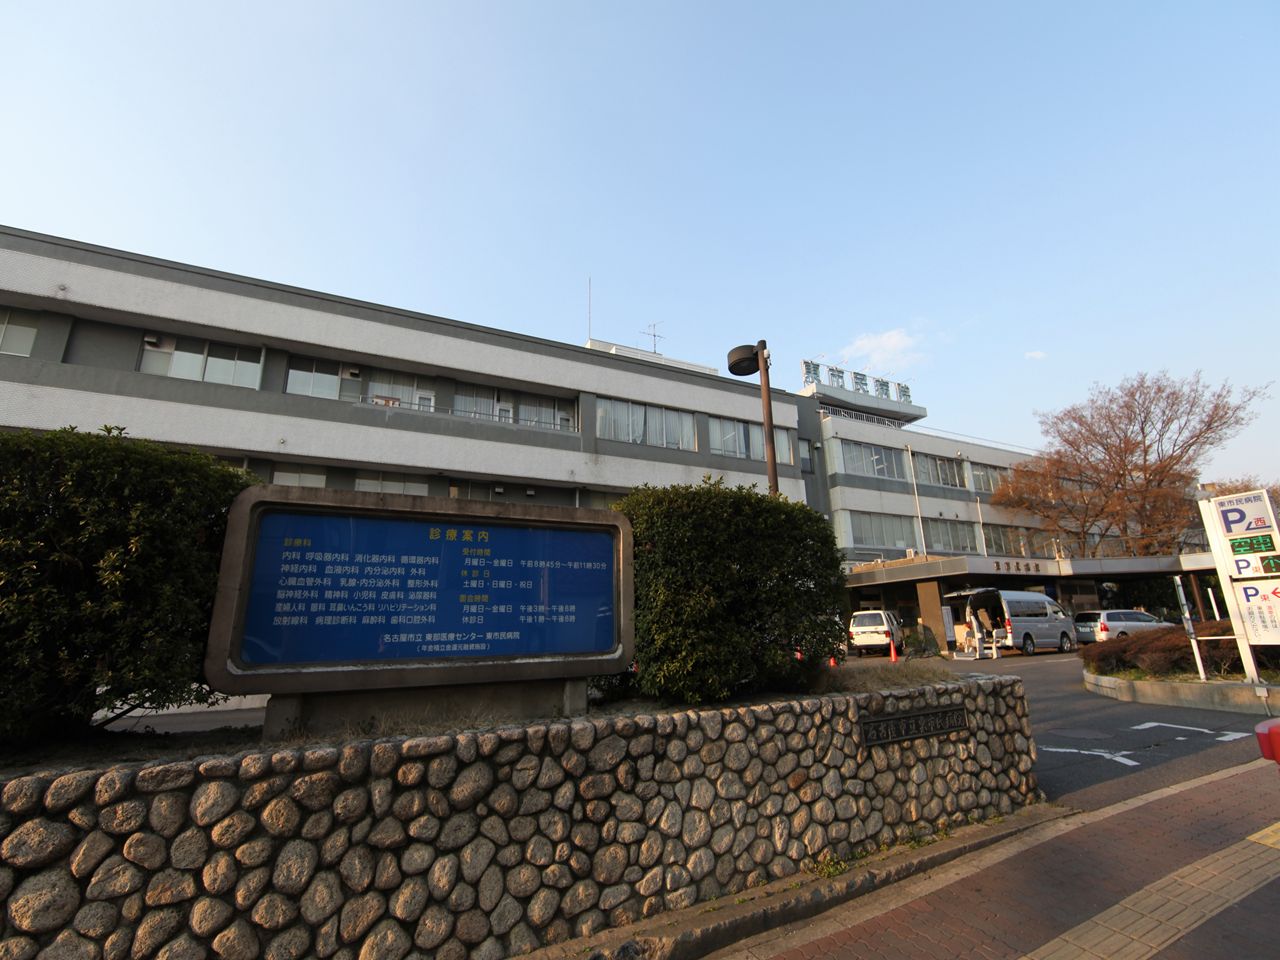 Hospital. 517m to Nagoya Municipal Eastern Medical Center (General Hospital) (hospital)